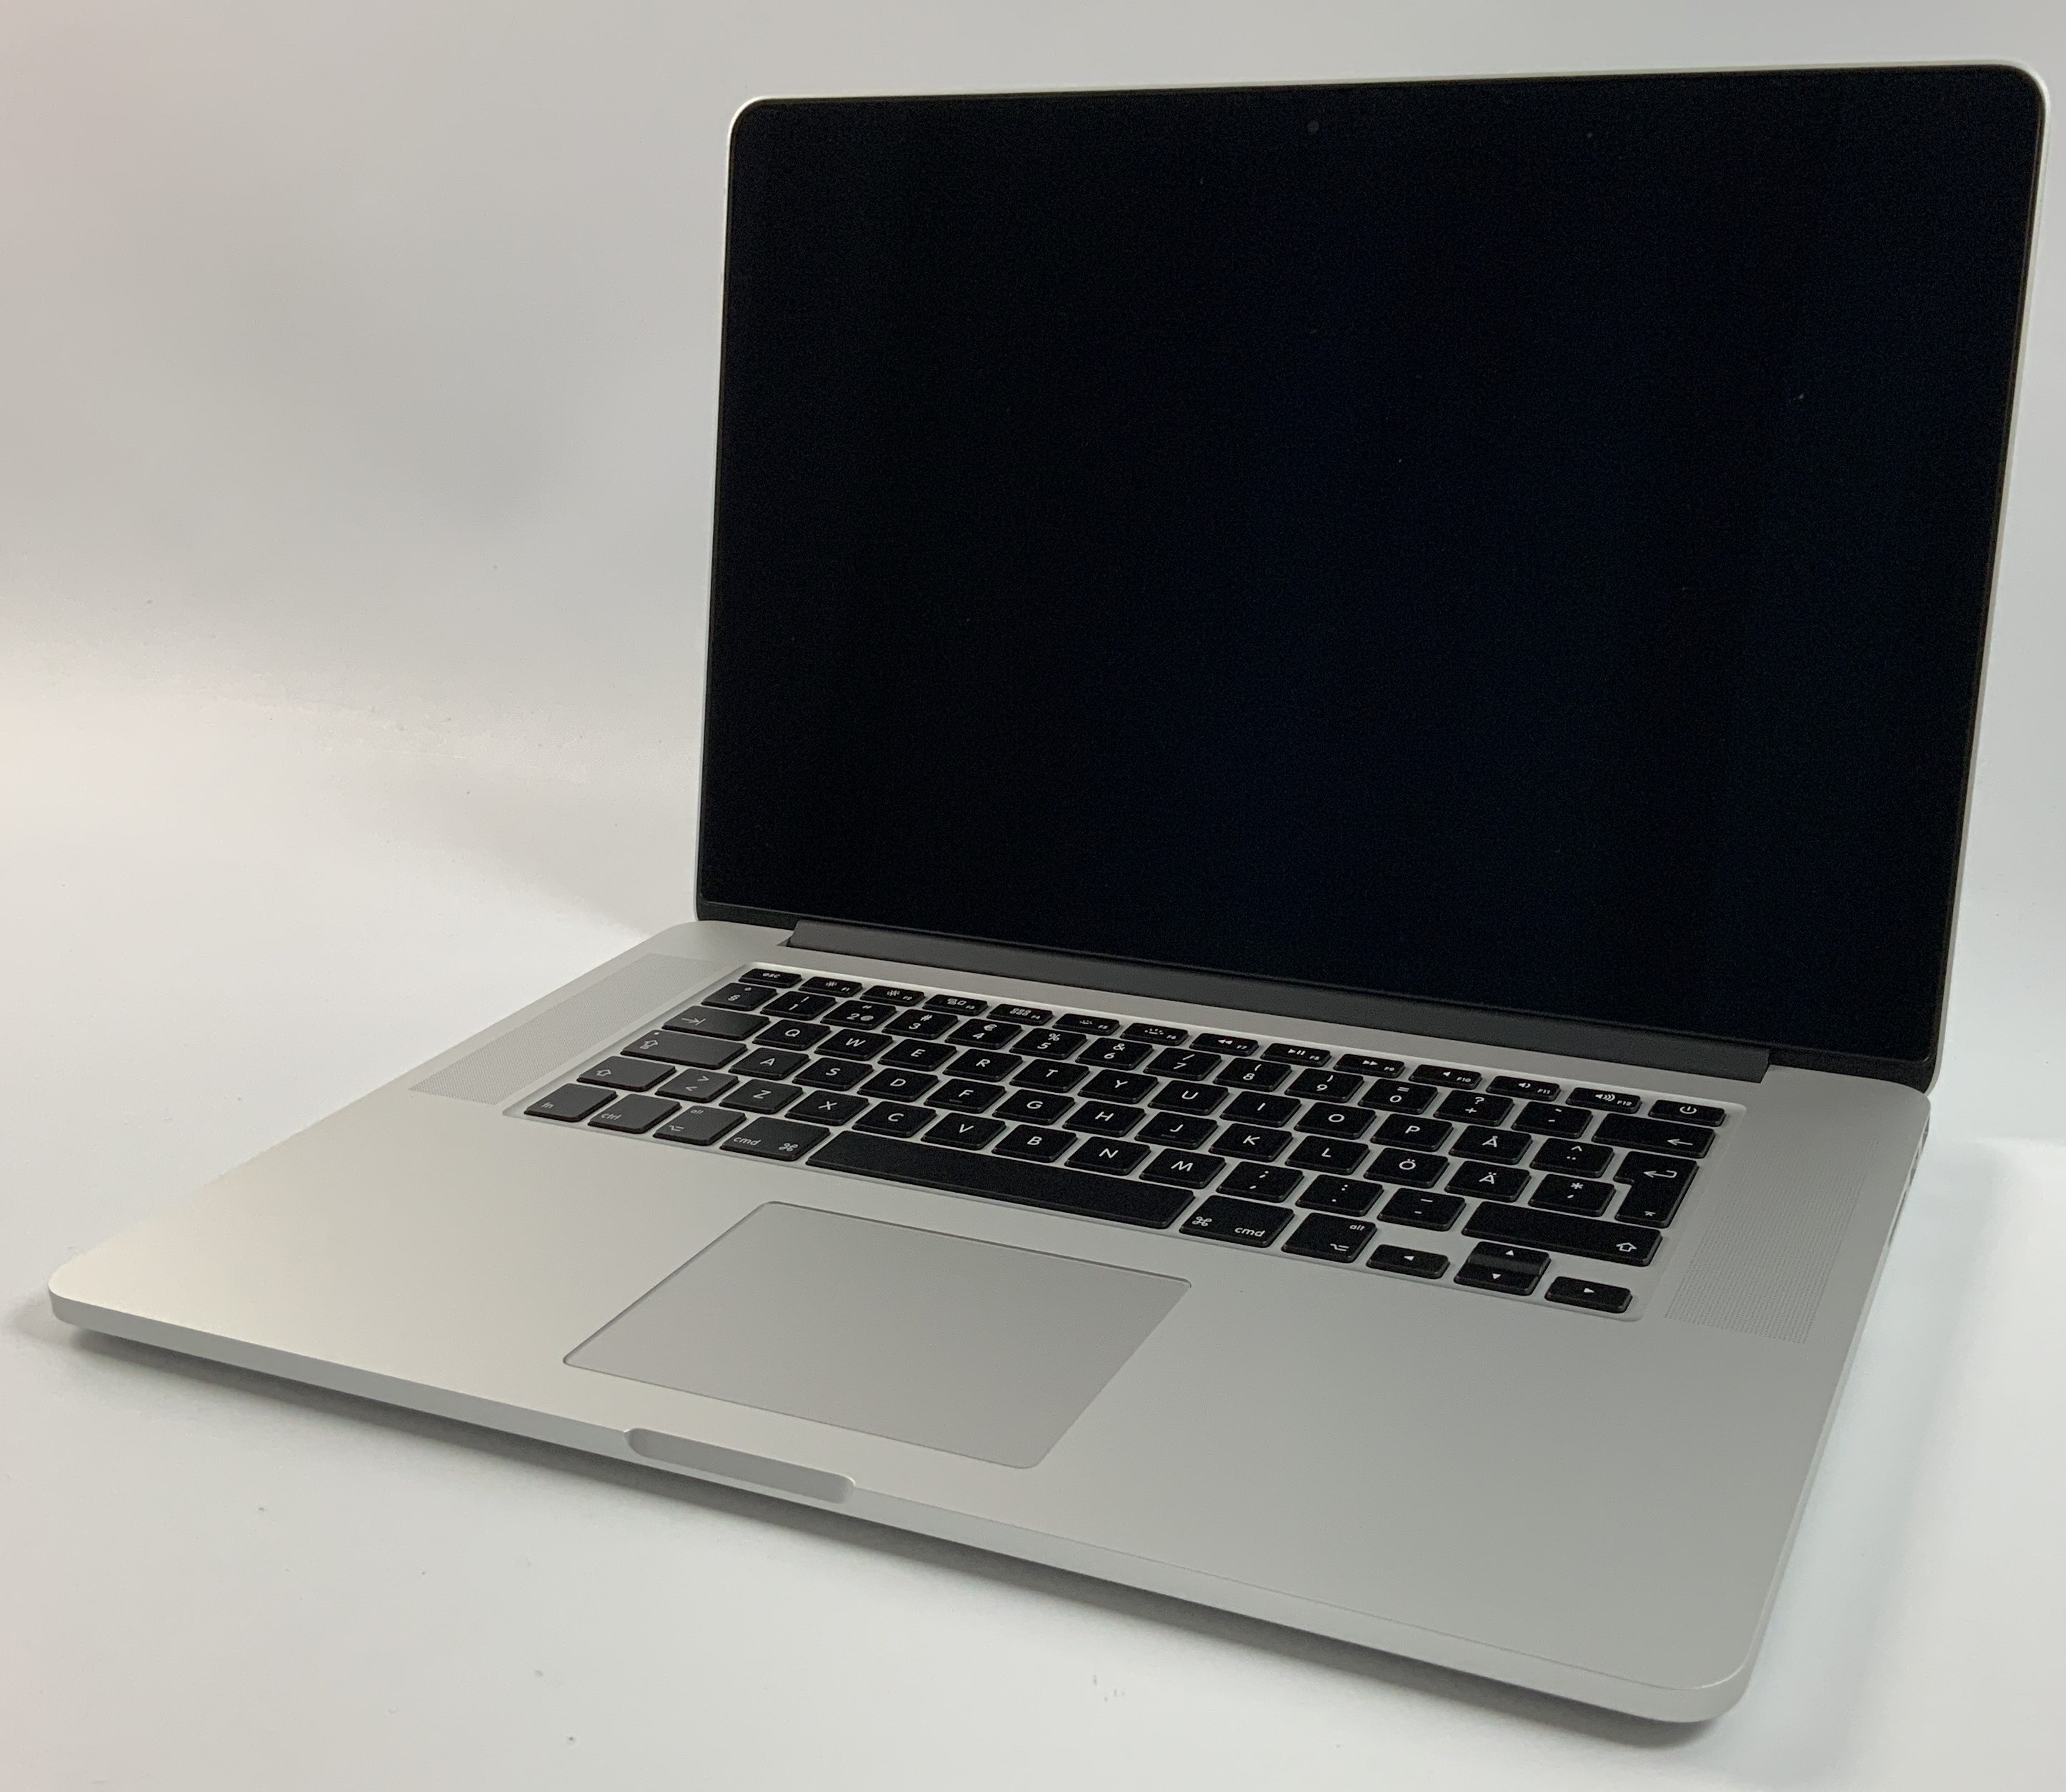 MacBook Pro Retina 15" Mid 2015 (Intel Quad-Core i7 2.2 GHz 16 GB RAM 256 GB SSD), Intel Quad-Core i7 2.2 GHz, 16 GB RAM, 256 GB SSD, Kuva 1